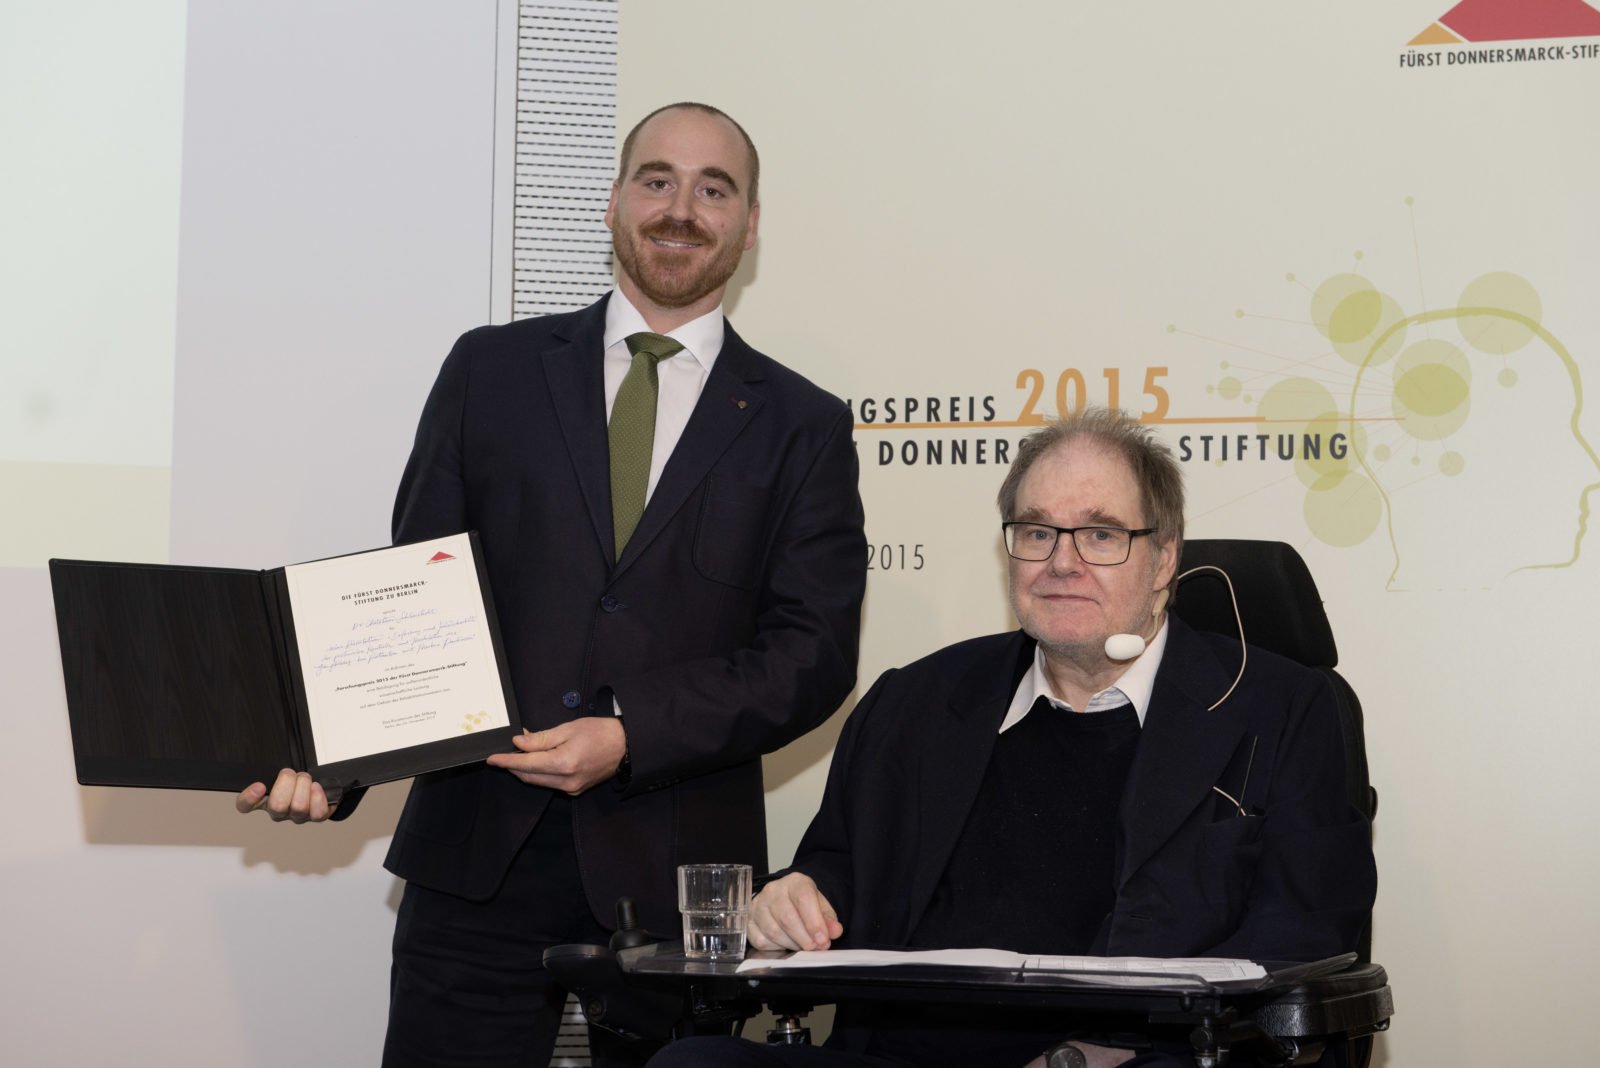 Christian Schlenstedt und Prof. Wegscheider bei der Forschungspreisverleihung 2015. Christian Schlenstedt hält die Urkunde seiner Belobigung in den Händen